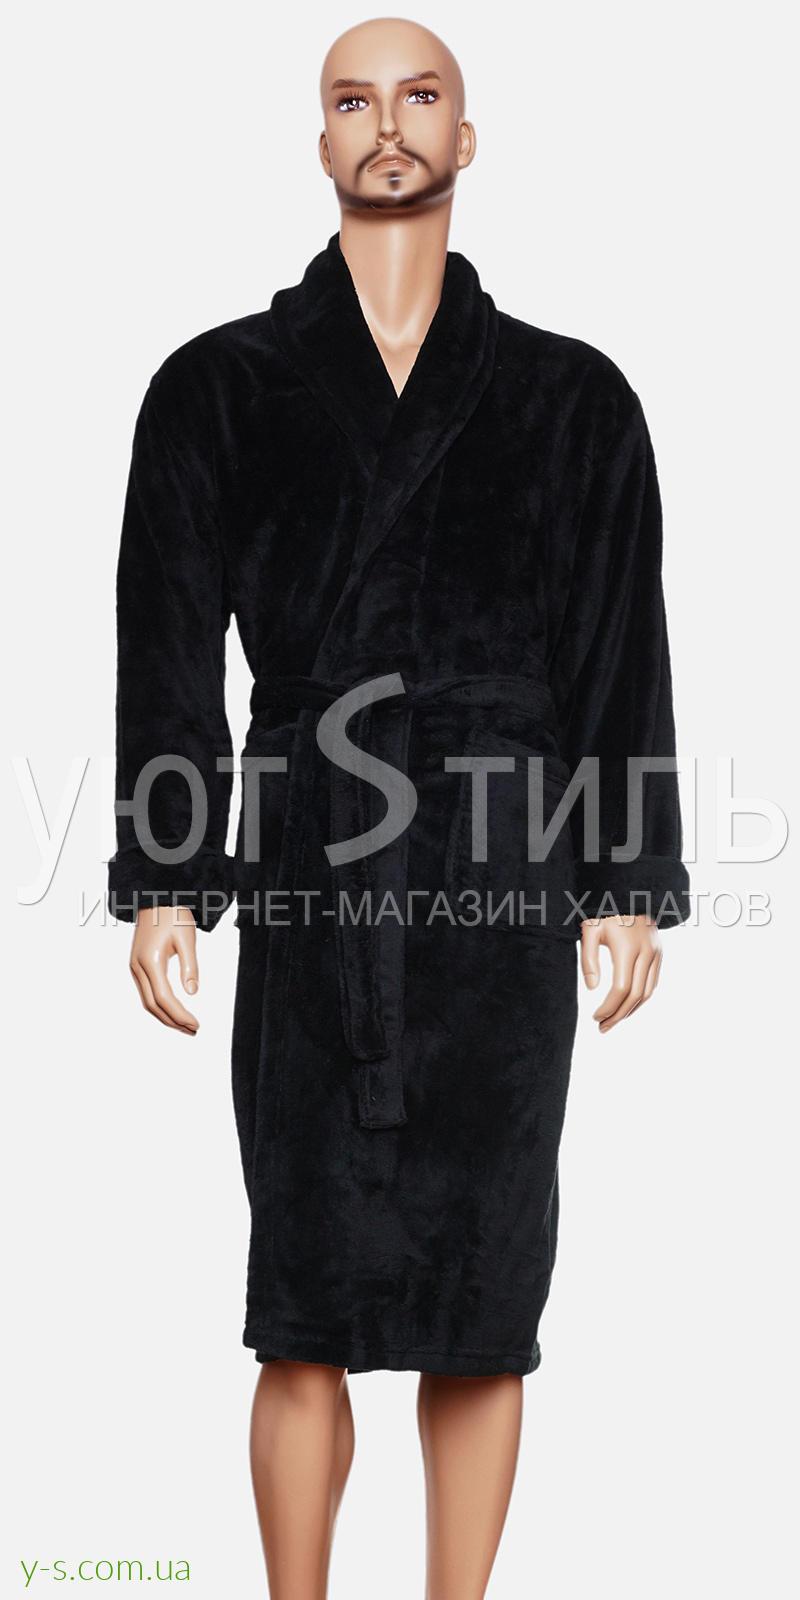 Мужской пушистый халат черного цвета CN5325